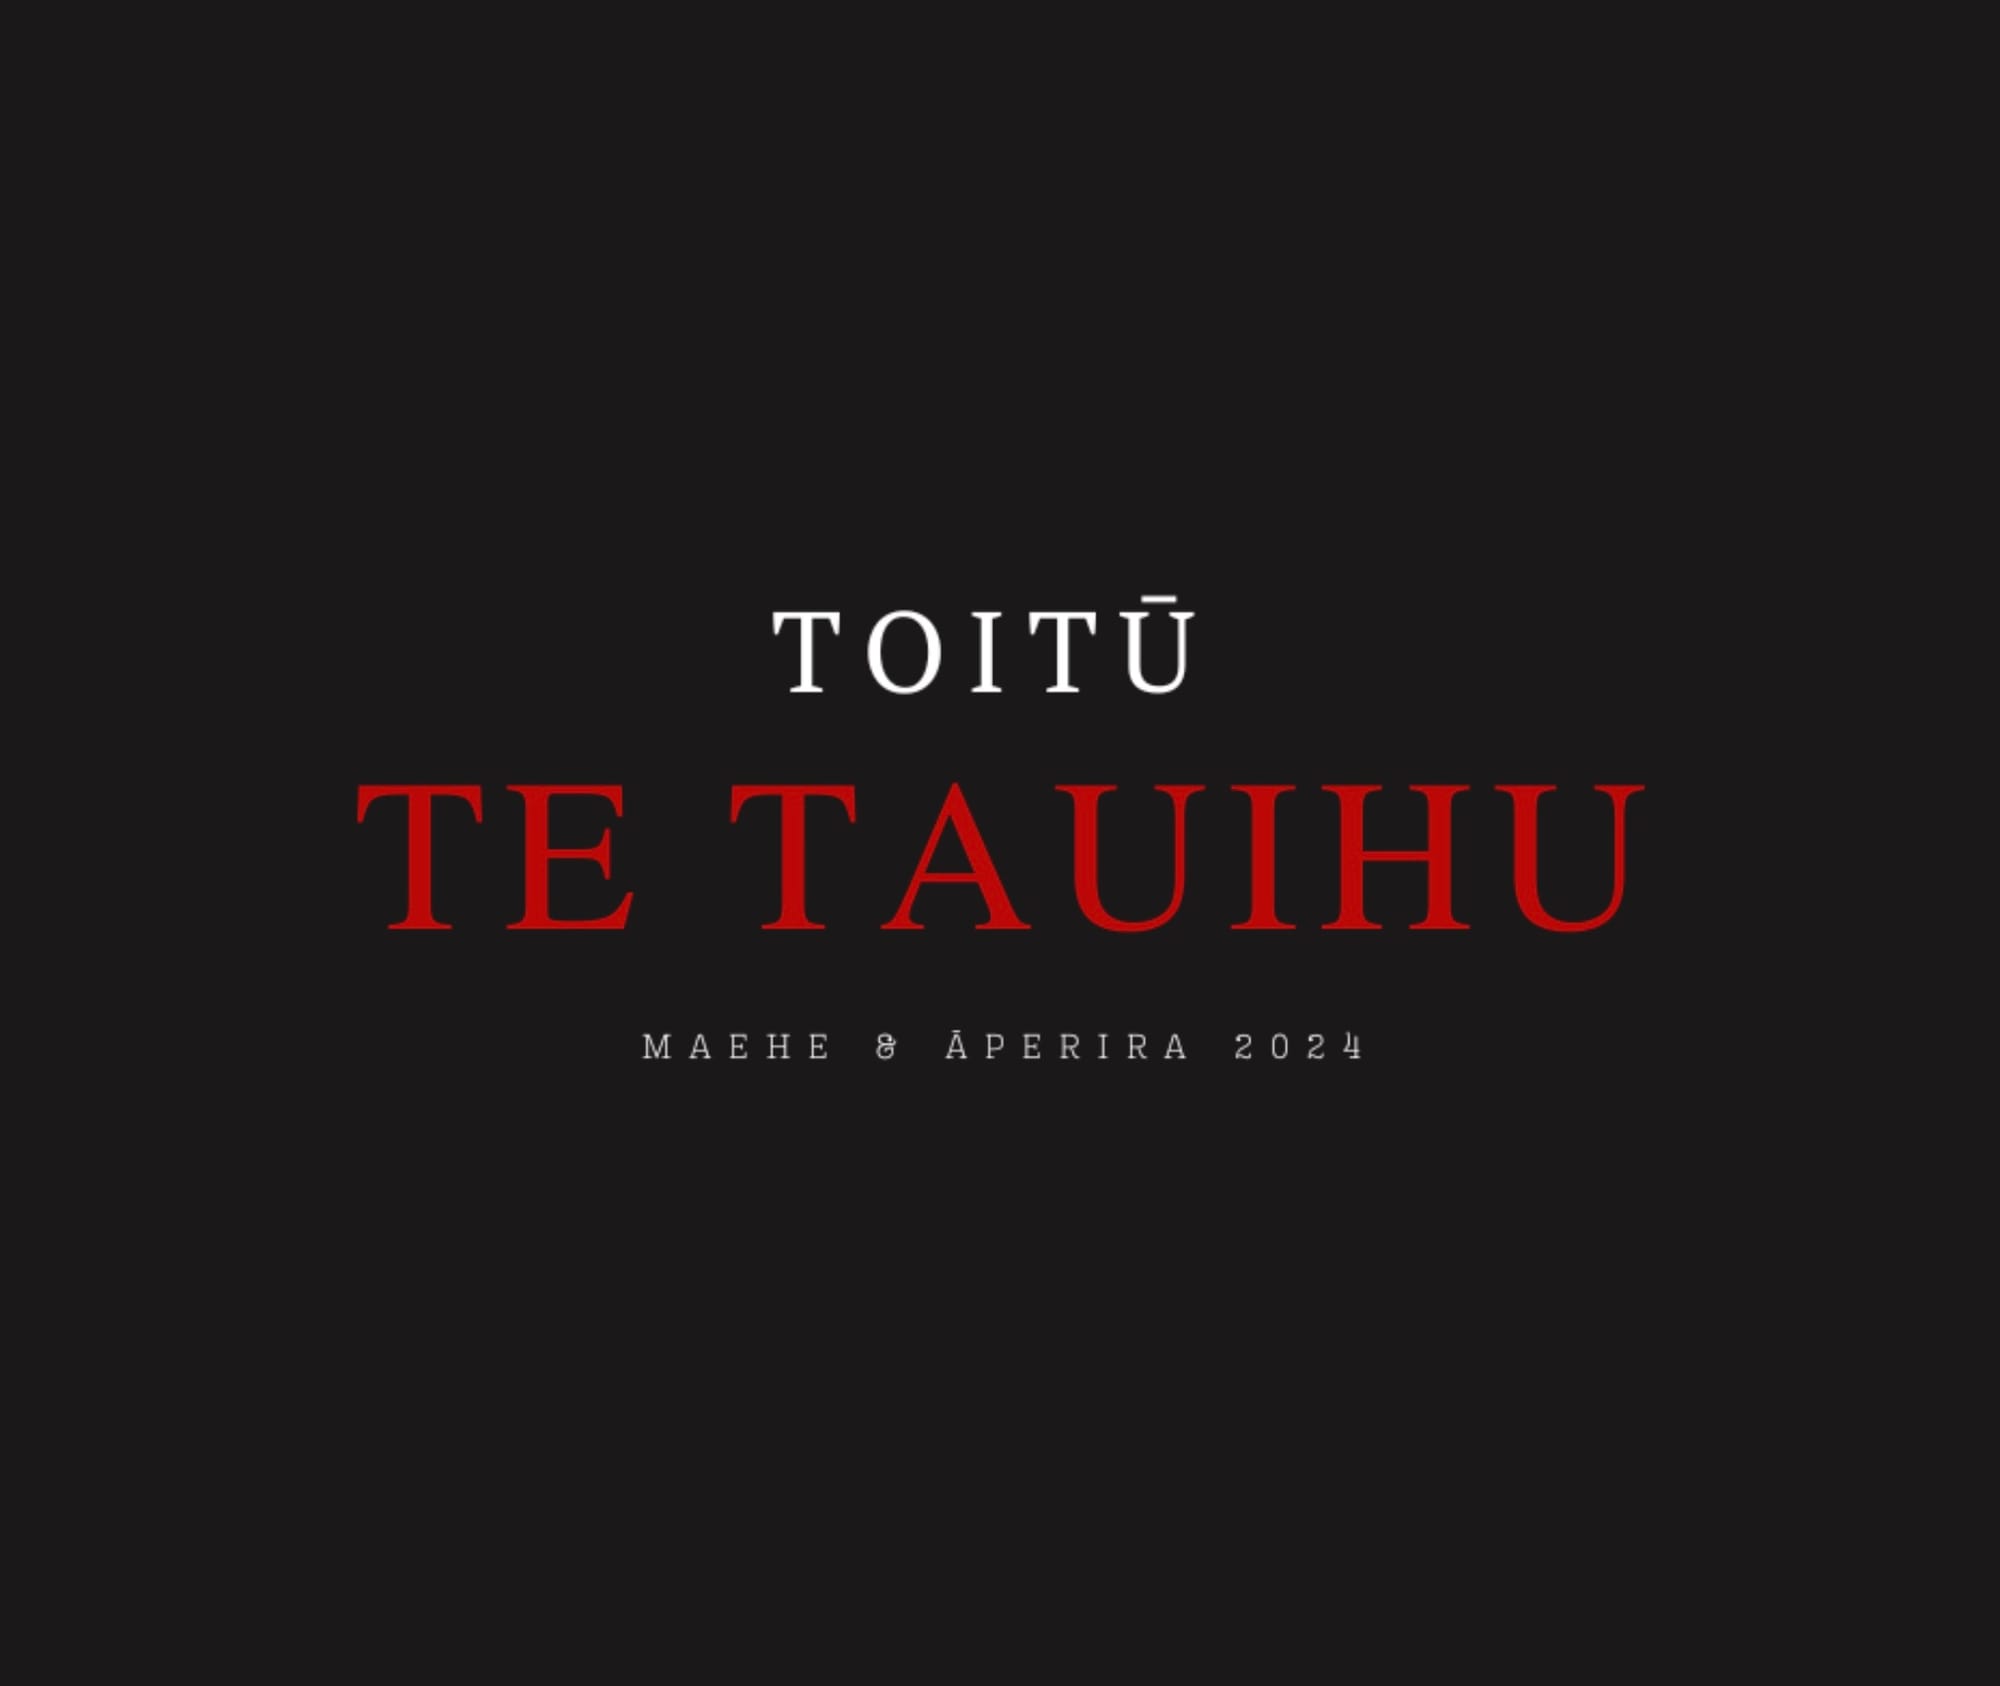 Toitū te Tauihu